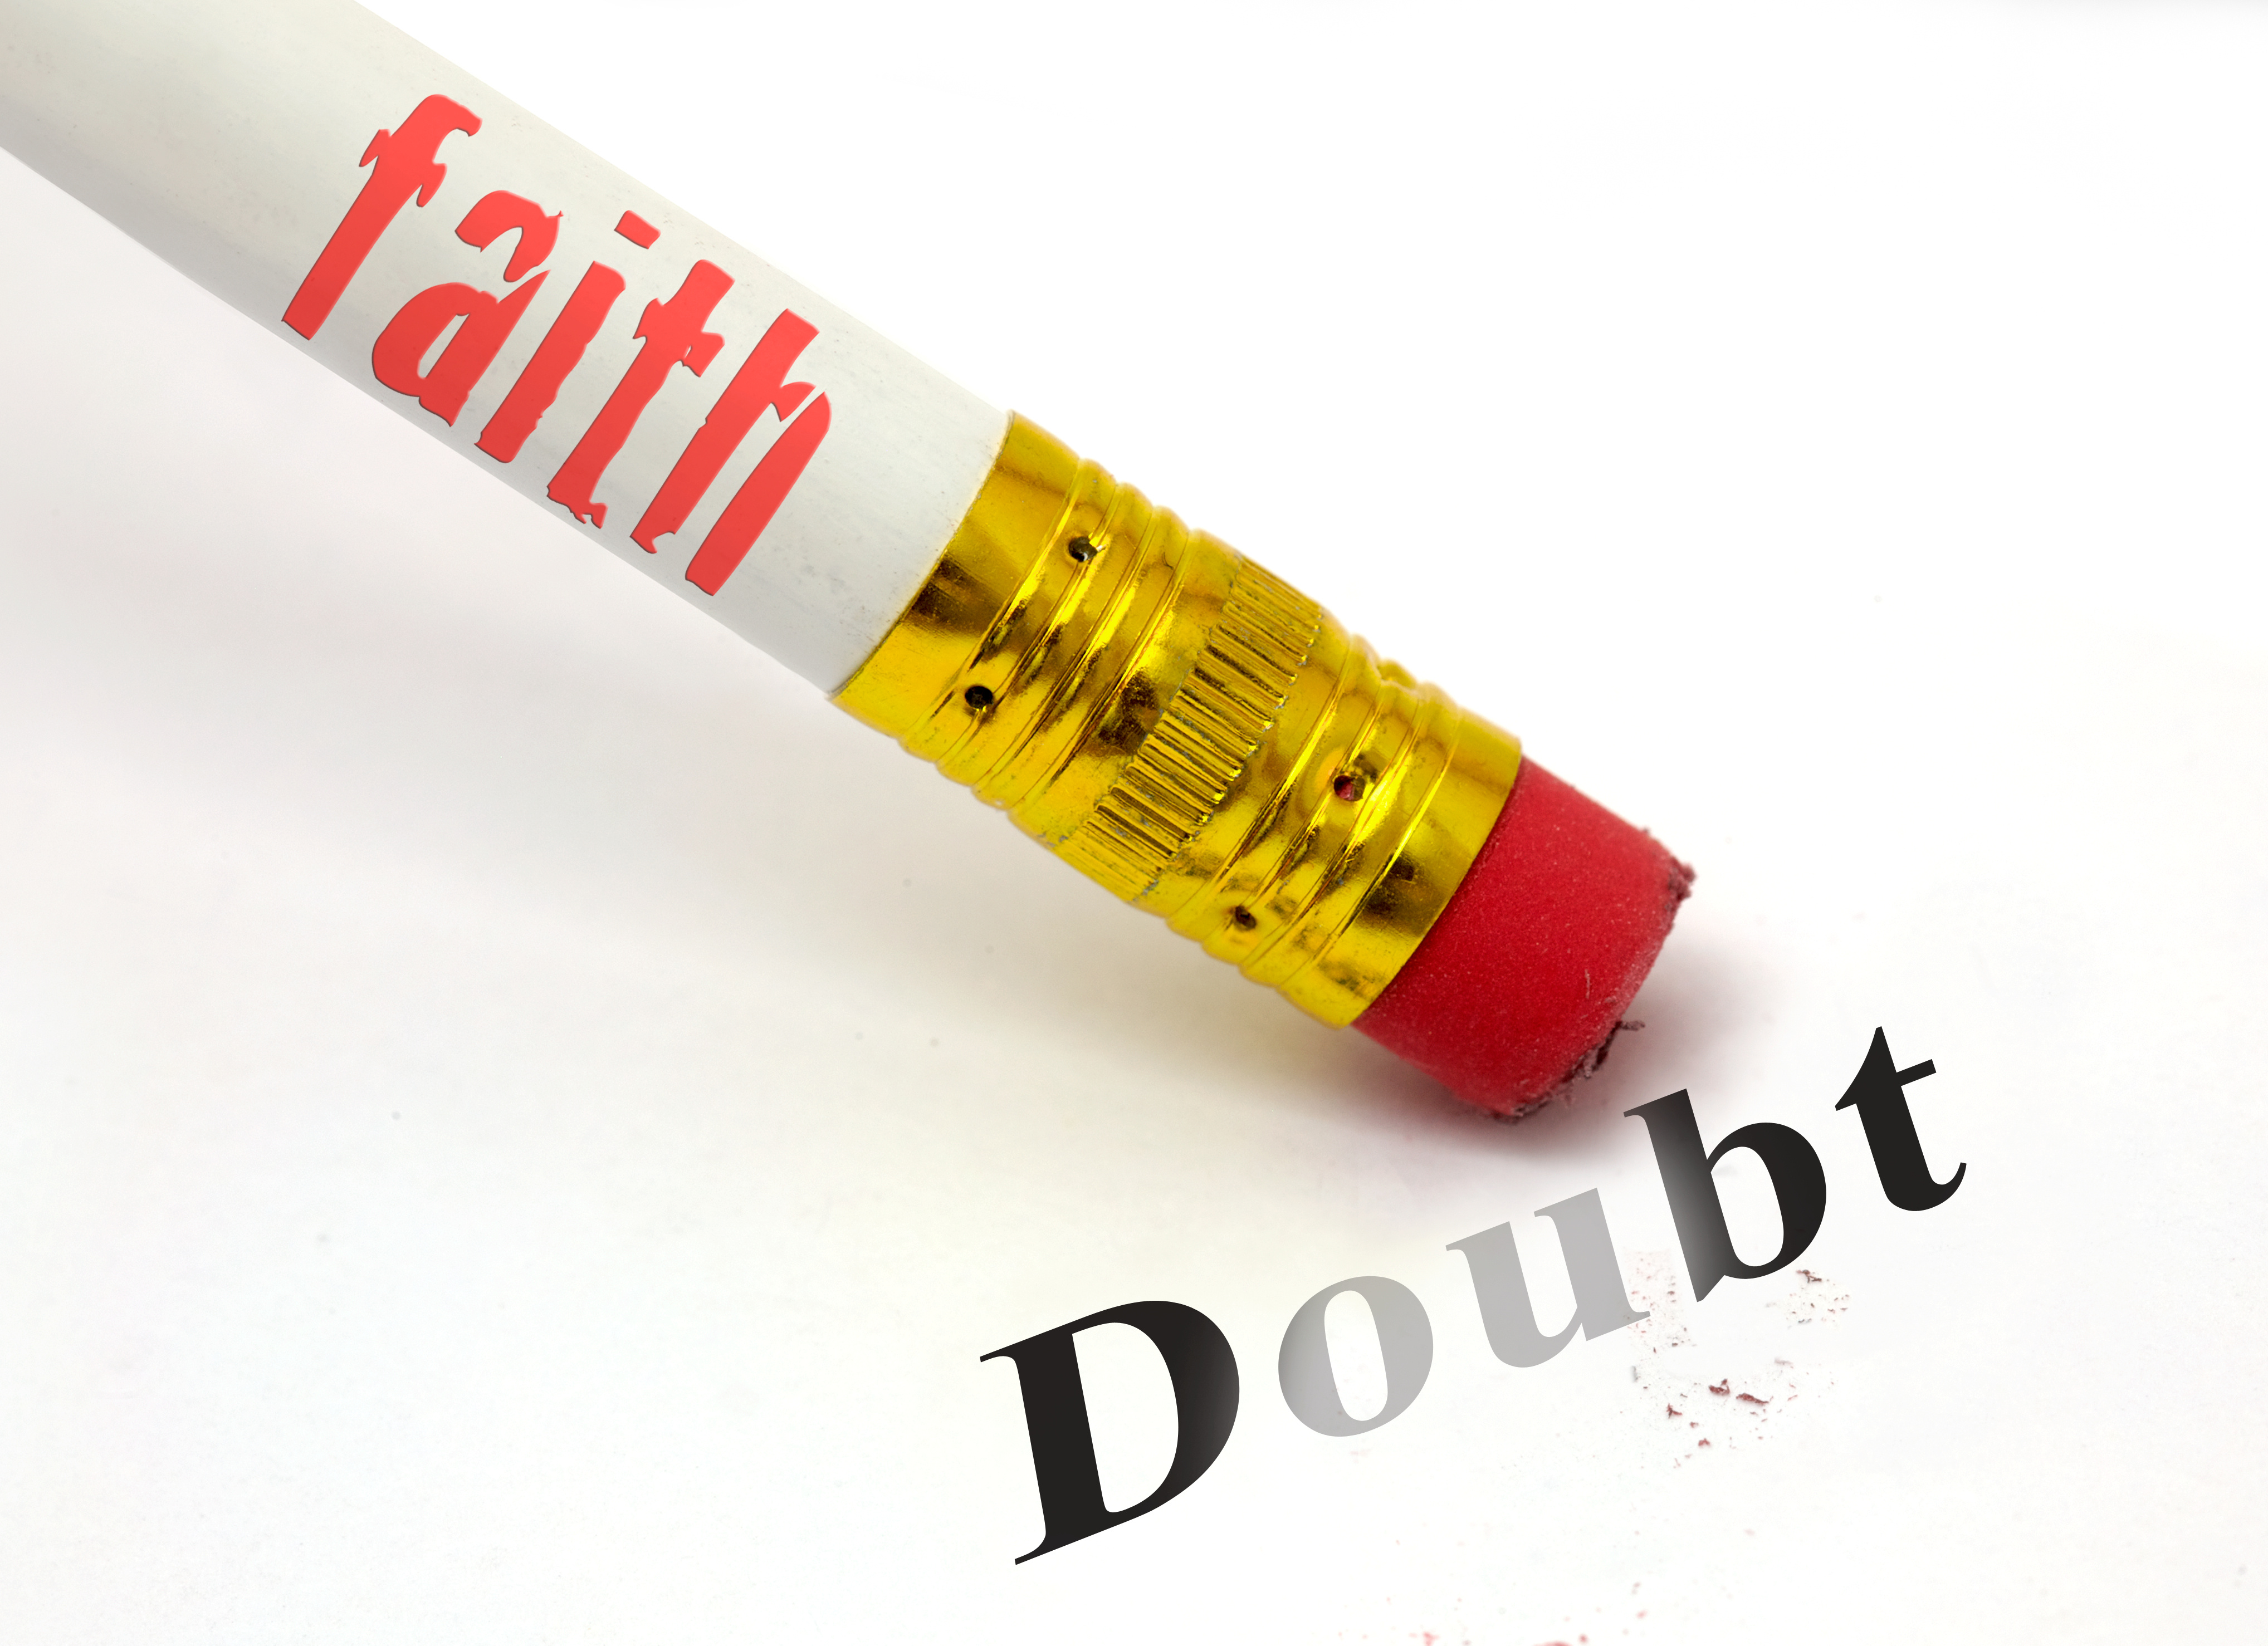 doubt is the shadow cast by faith cs lewis